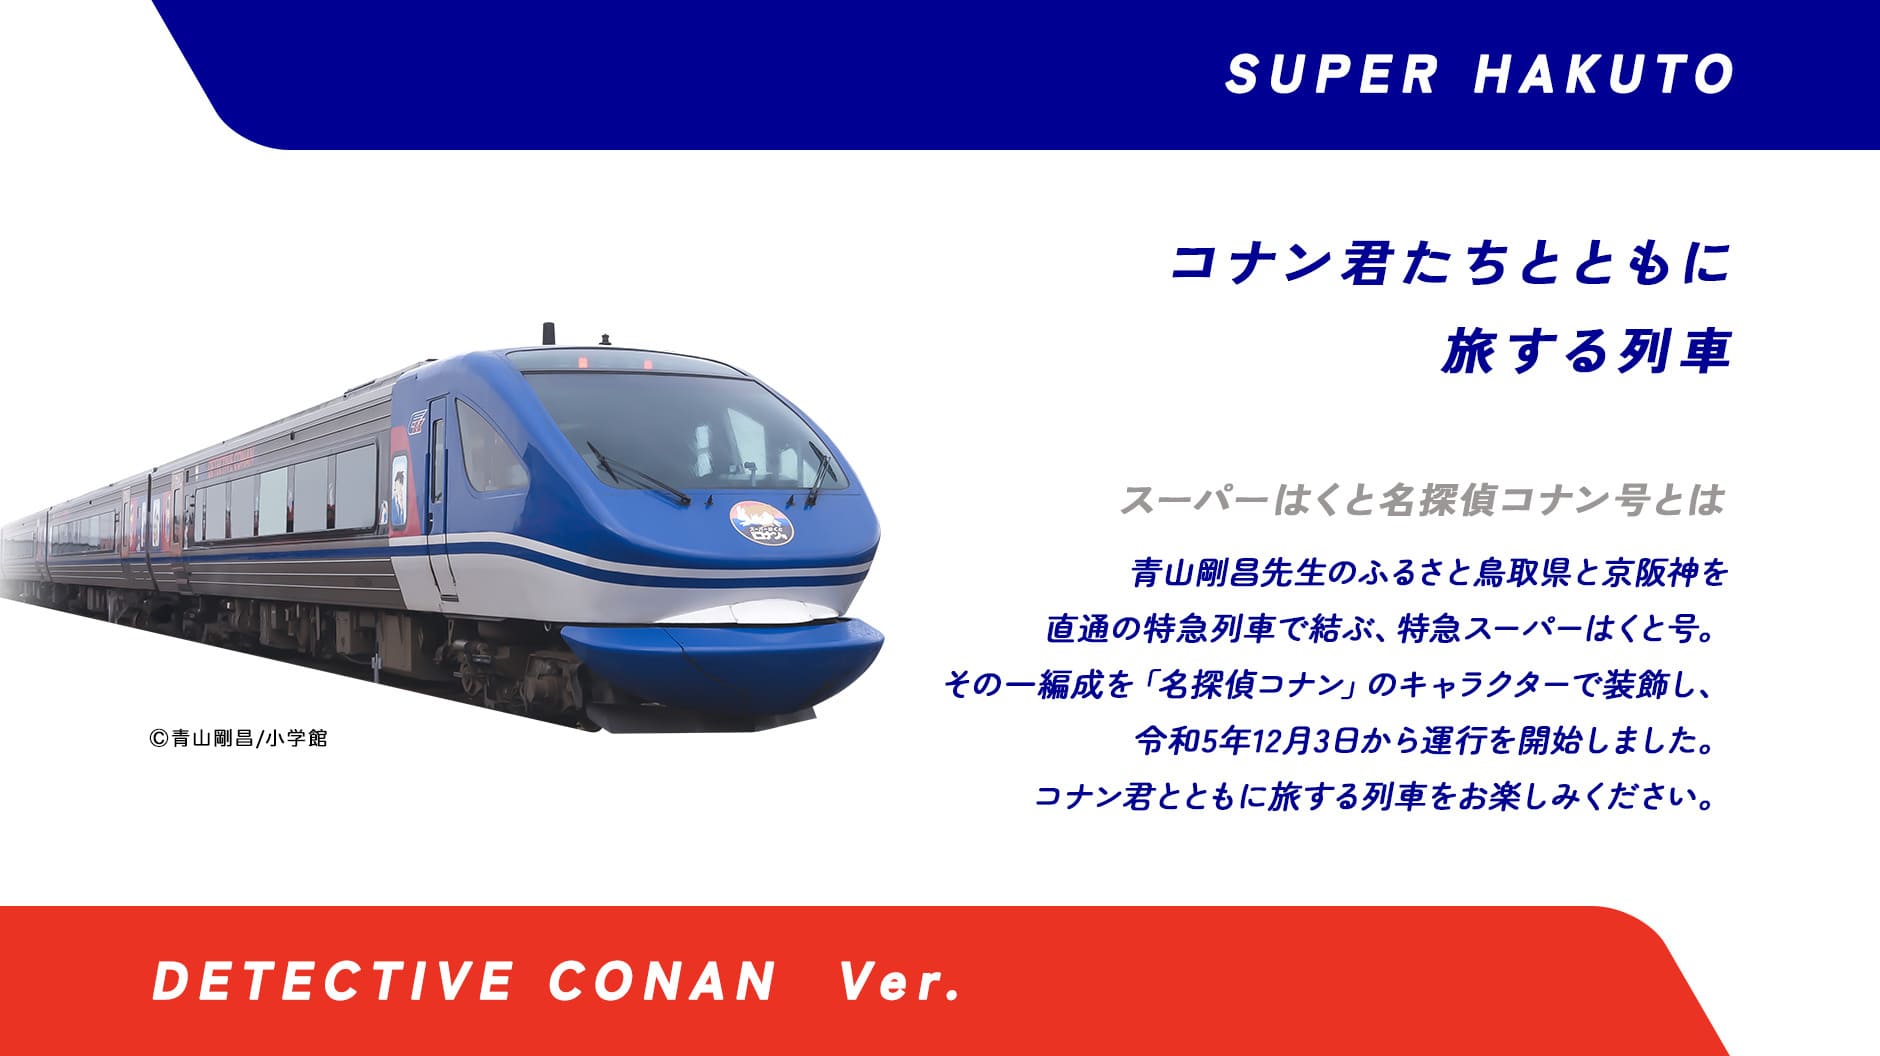 スーパーはくと名探偵コナン号とは青山剛昌先生のふるさと鳥取県と京阪神を直通の特急列車で結ぶ特急スーパーはくと号。その一編成を「名探偵コナン」のキャラクターで装飾し、令和5年12月3日から運行を開始します。コナン君とともに旅する列車をお楽しみください。